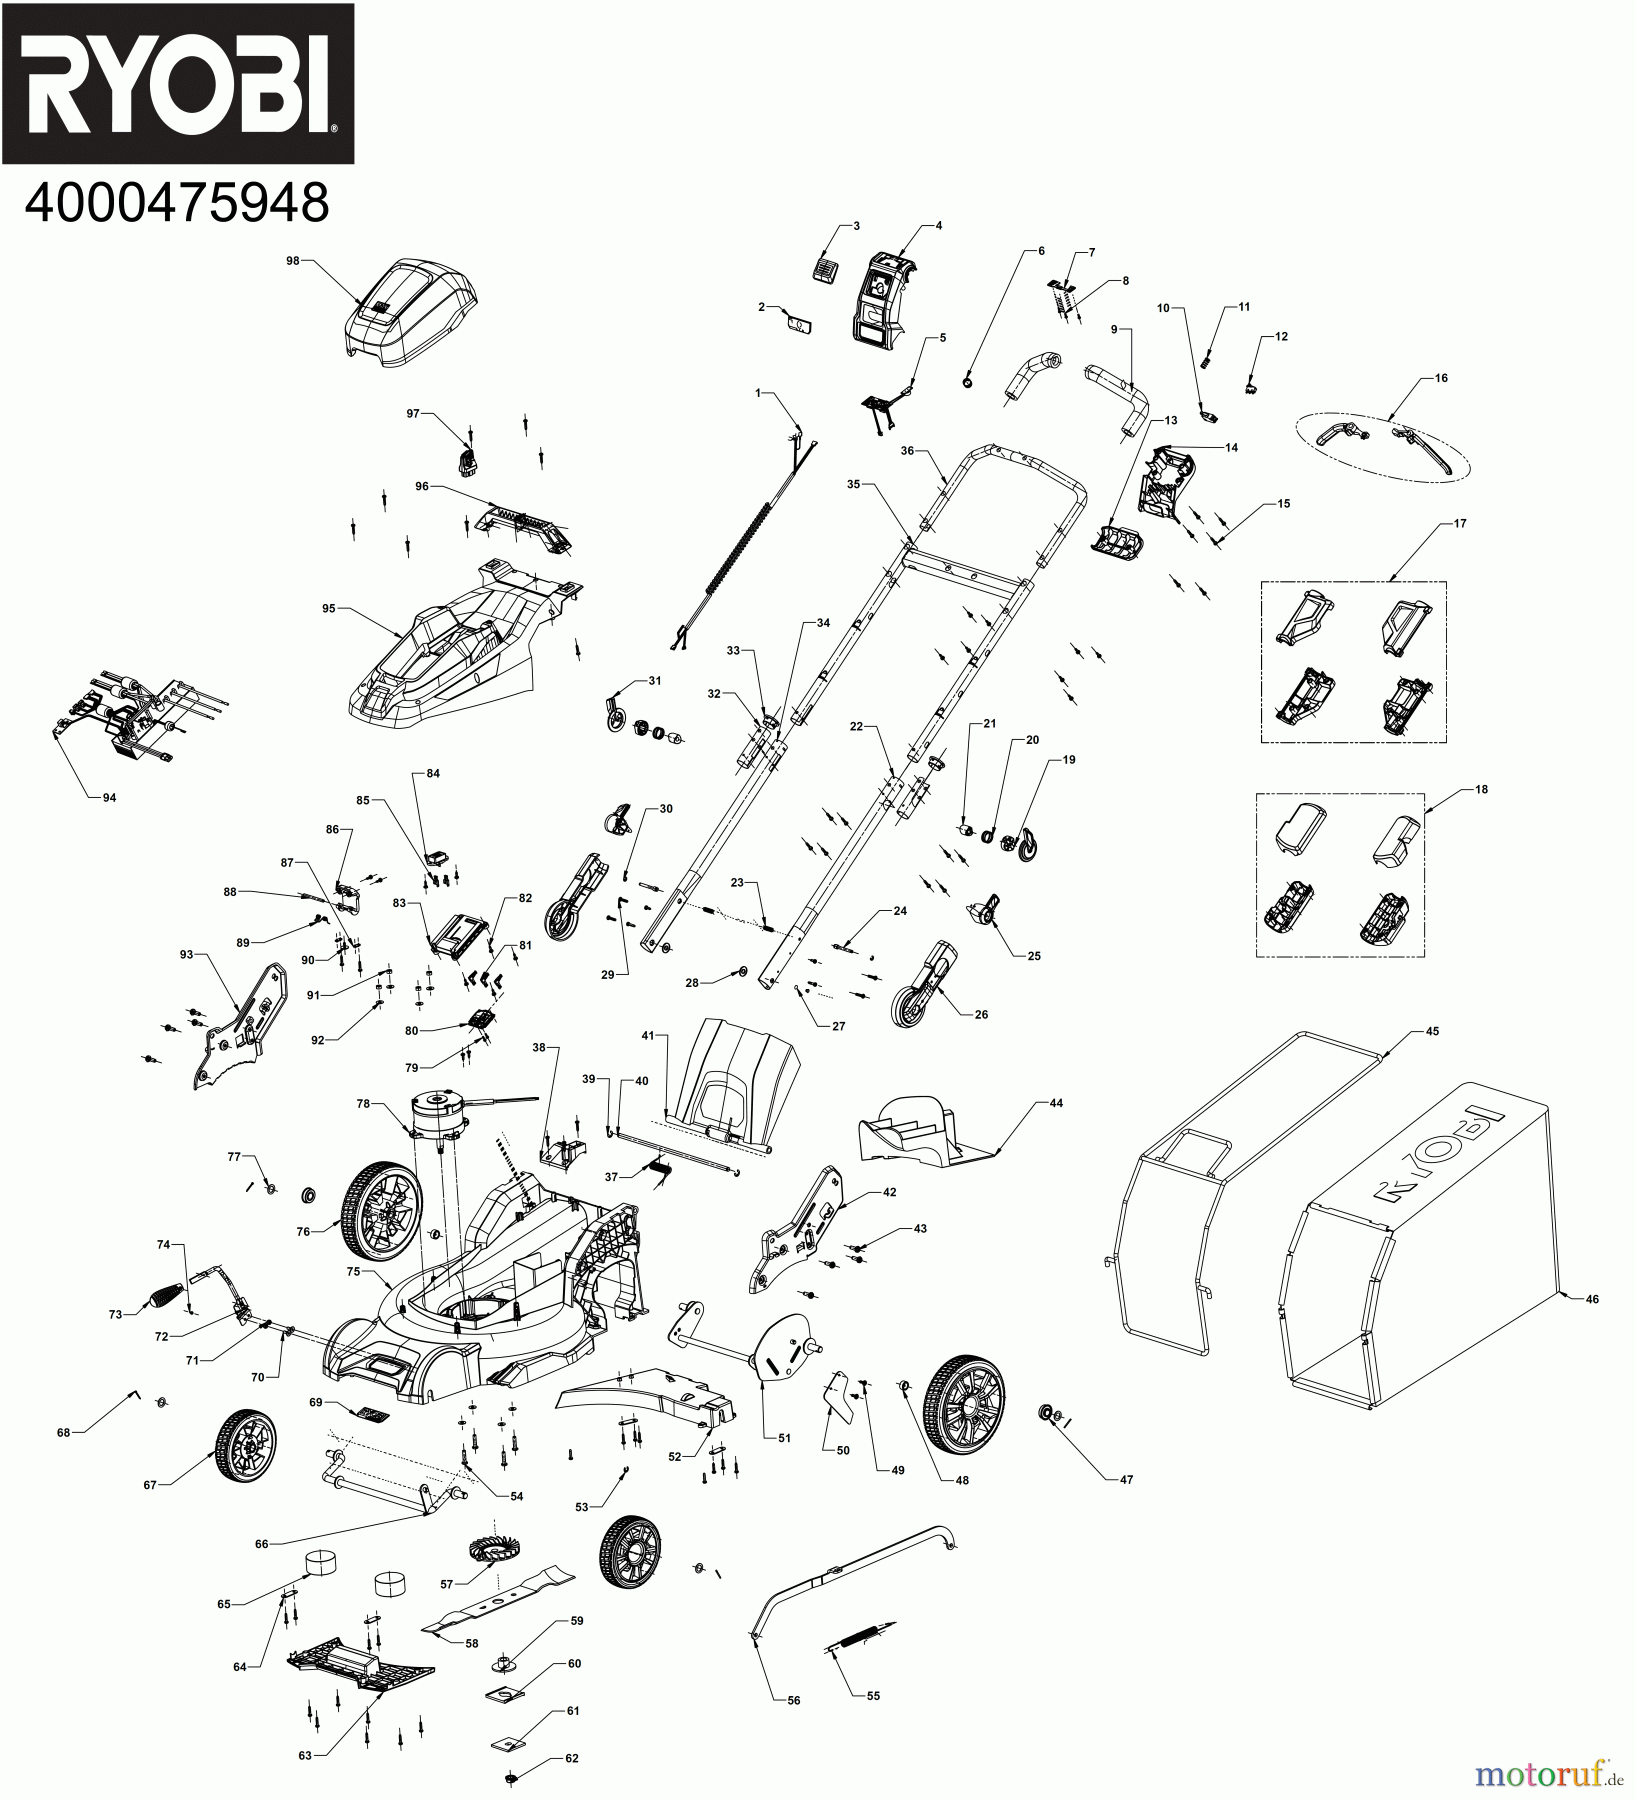  Ryobi Rasenmäher Akku RY36LM40A 36 V MAX POWER Akku-Rasenmäher, Schnittbreite 40 cm Seite 1